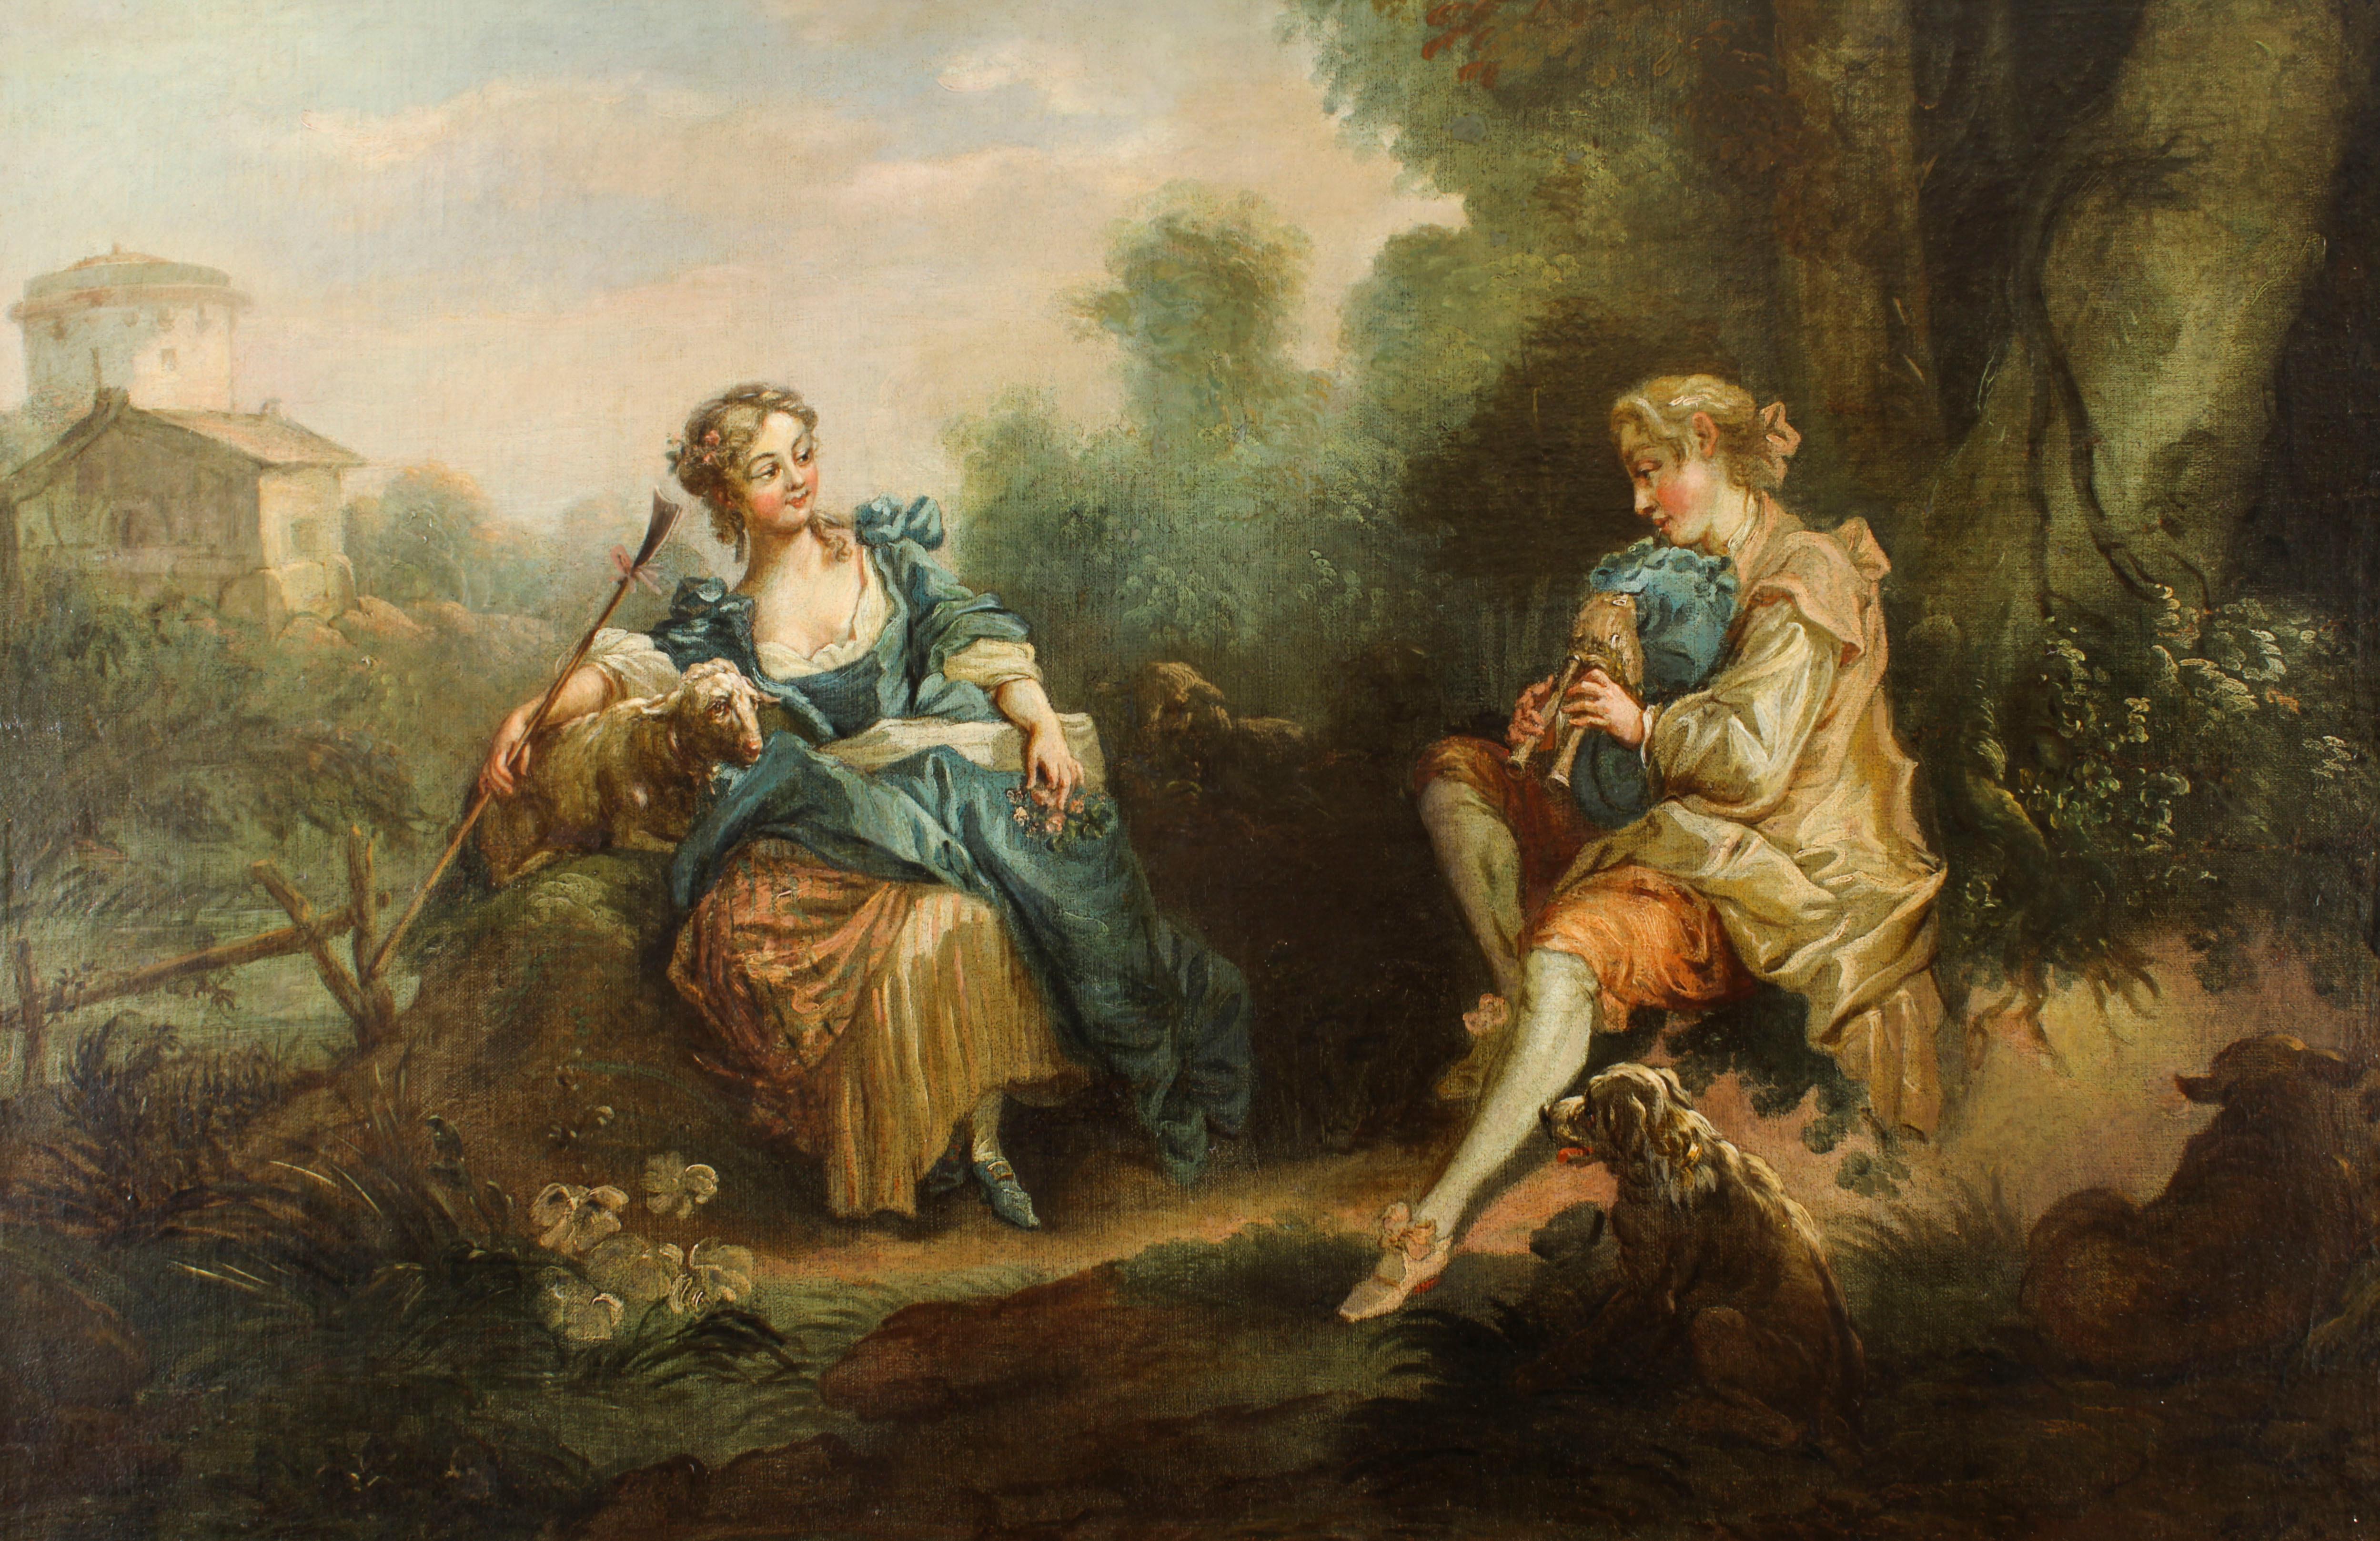 Une belle huile sur toile ancienne française dans la manière de Jean-Antoine Watteau (1684-1721) 'La Sérénade' datant du début du 19ème siècle. 
 
Le charmant sujet du tableau est un couple qui se fait la cour dans un paysage de campagne